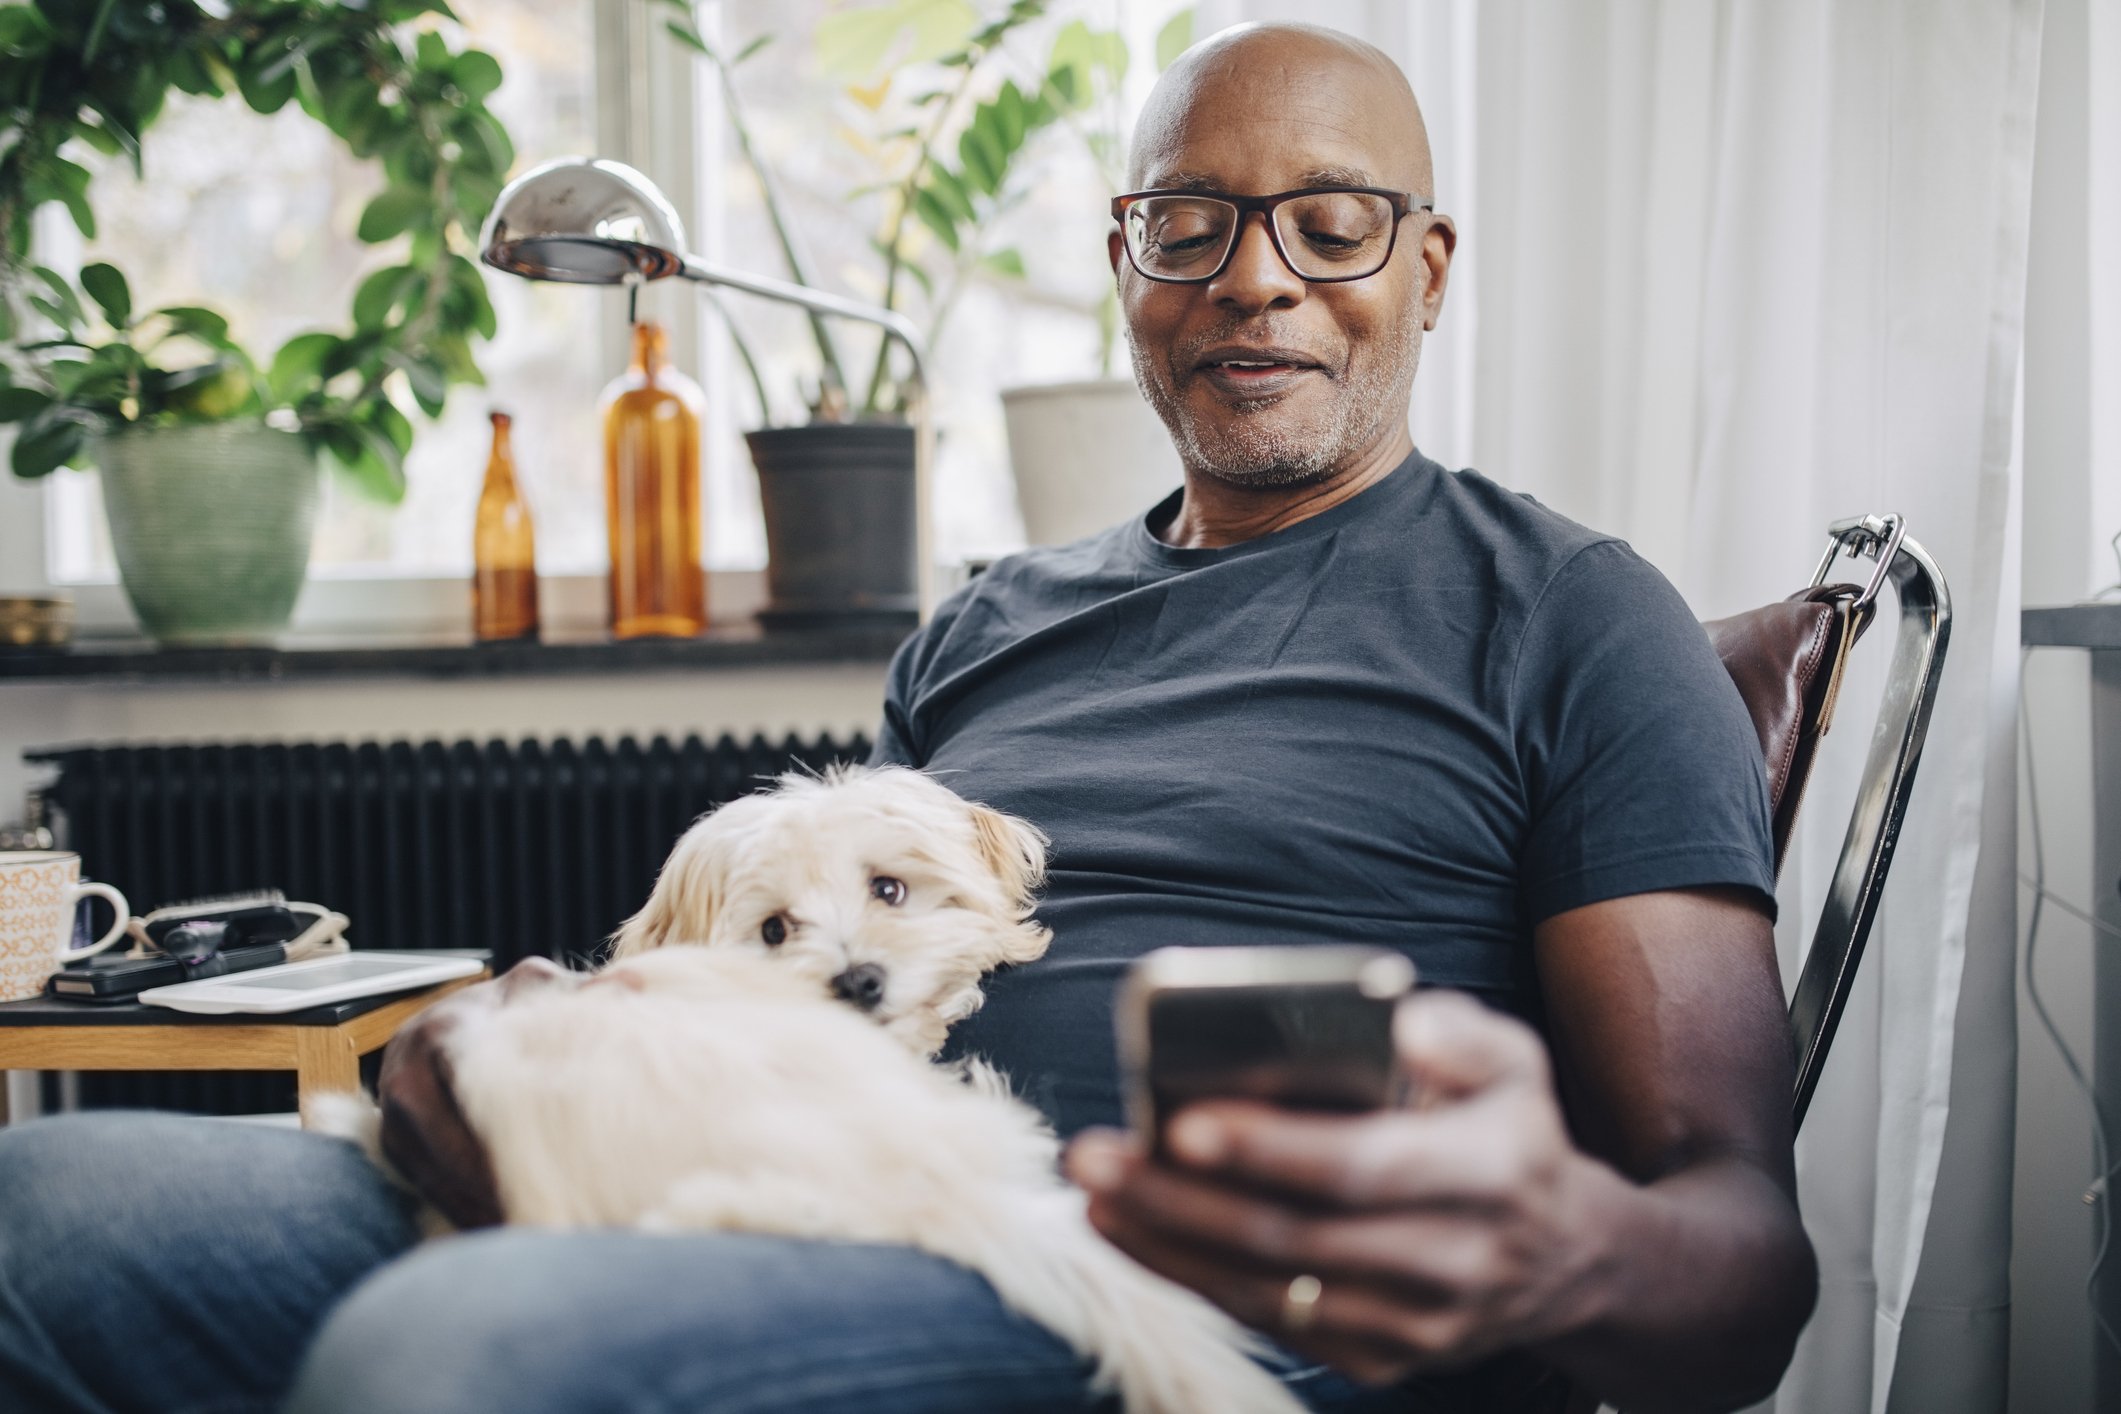 Mann mit Hund auf dem Schoß und Handy | Quelle: Getty Images